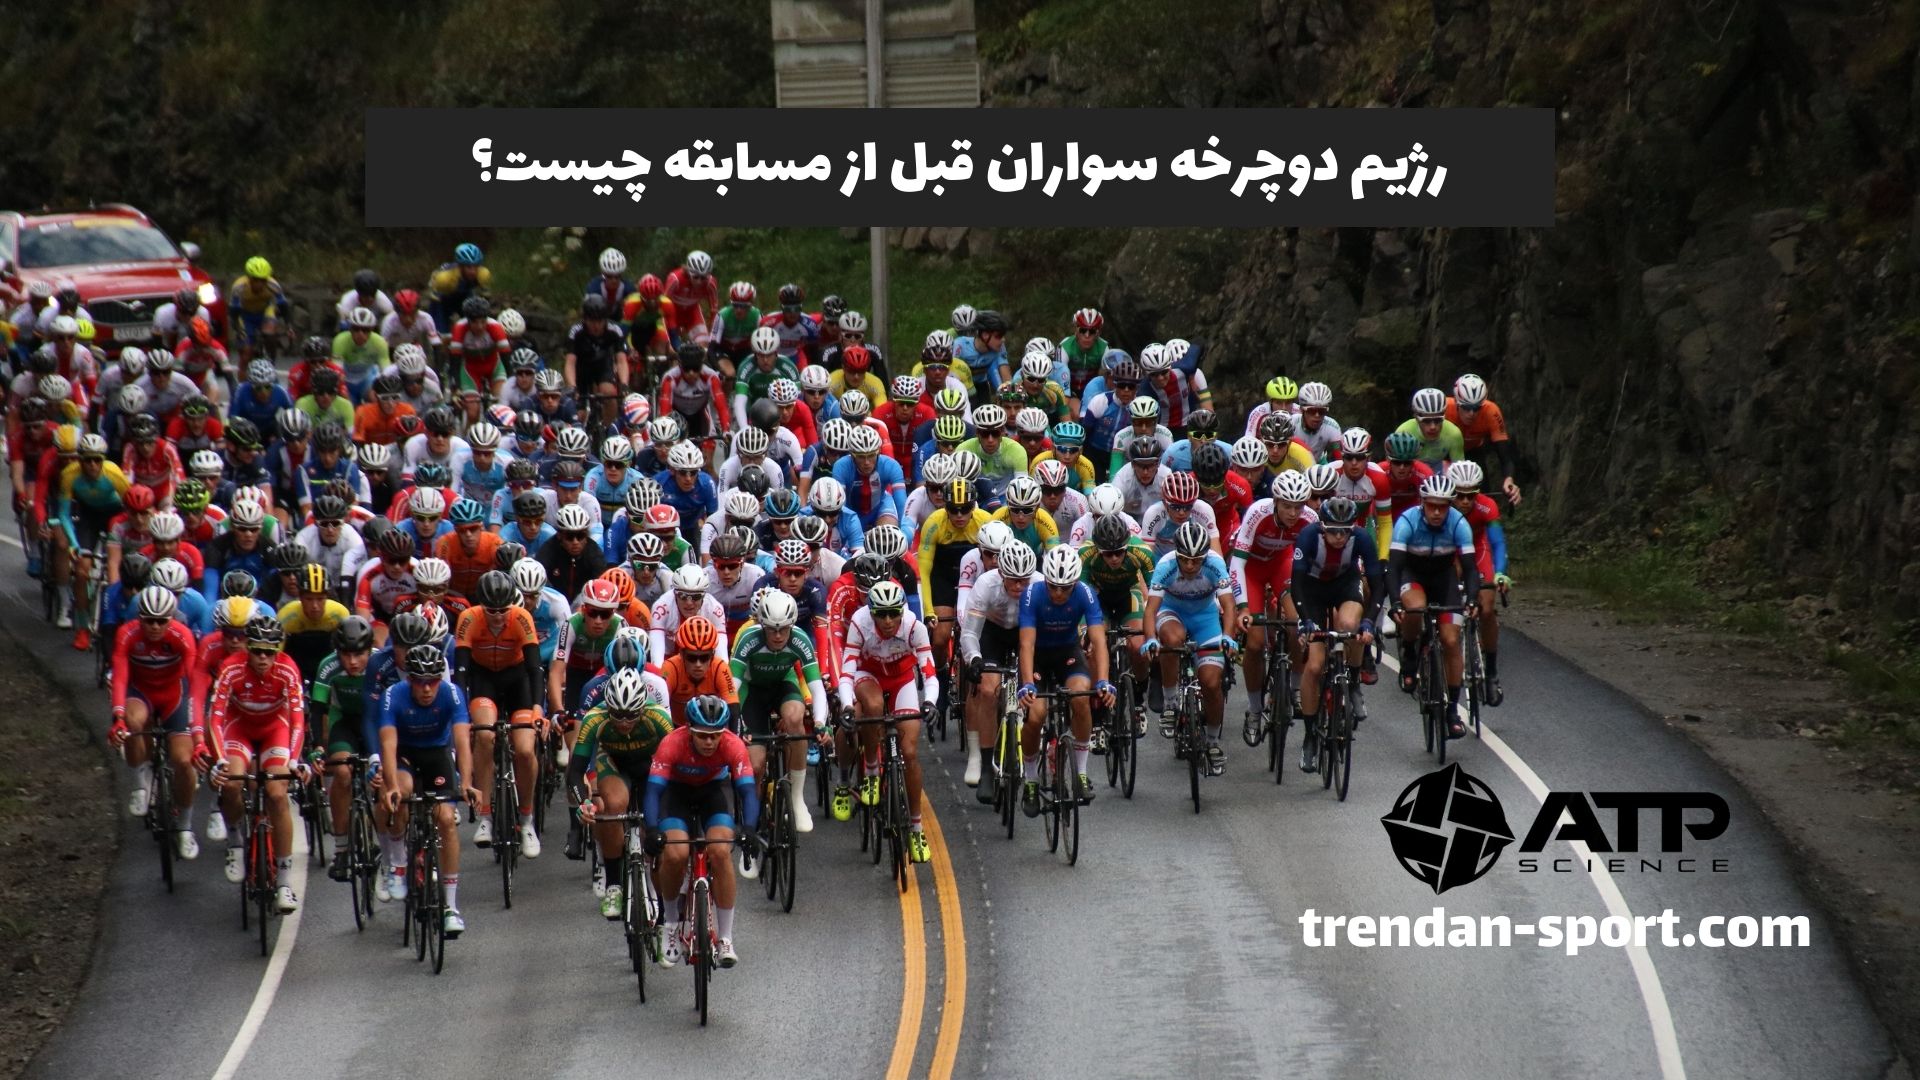 رژیم دوچرخه سواران قبل از مسابقه چیست؟